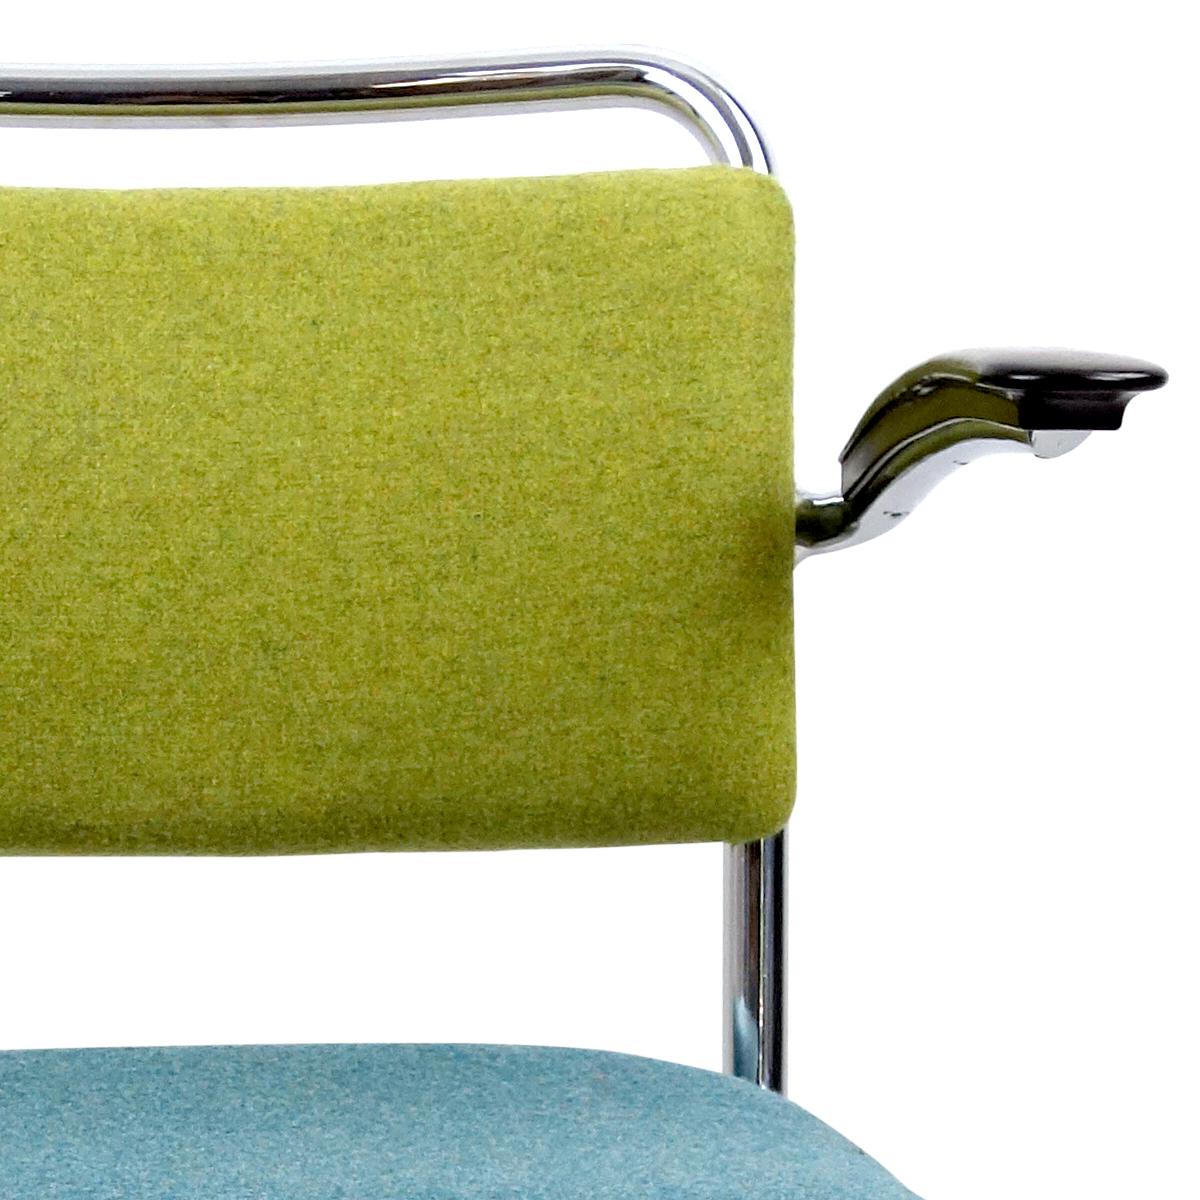 Ce classique du design hollandais a été conçu en 1931 par W.H. Gispen et est depuis lors une chaise très appréciée en raison de son aspect intemporel et de son grand confort. Il est composé d'une structure chromée et d'accoudoirs en bakélite.
Cette